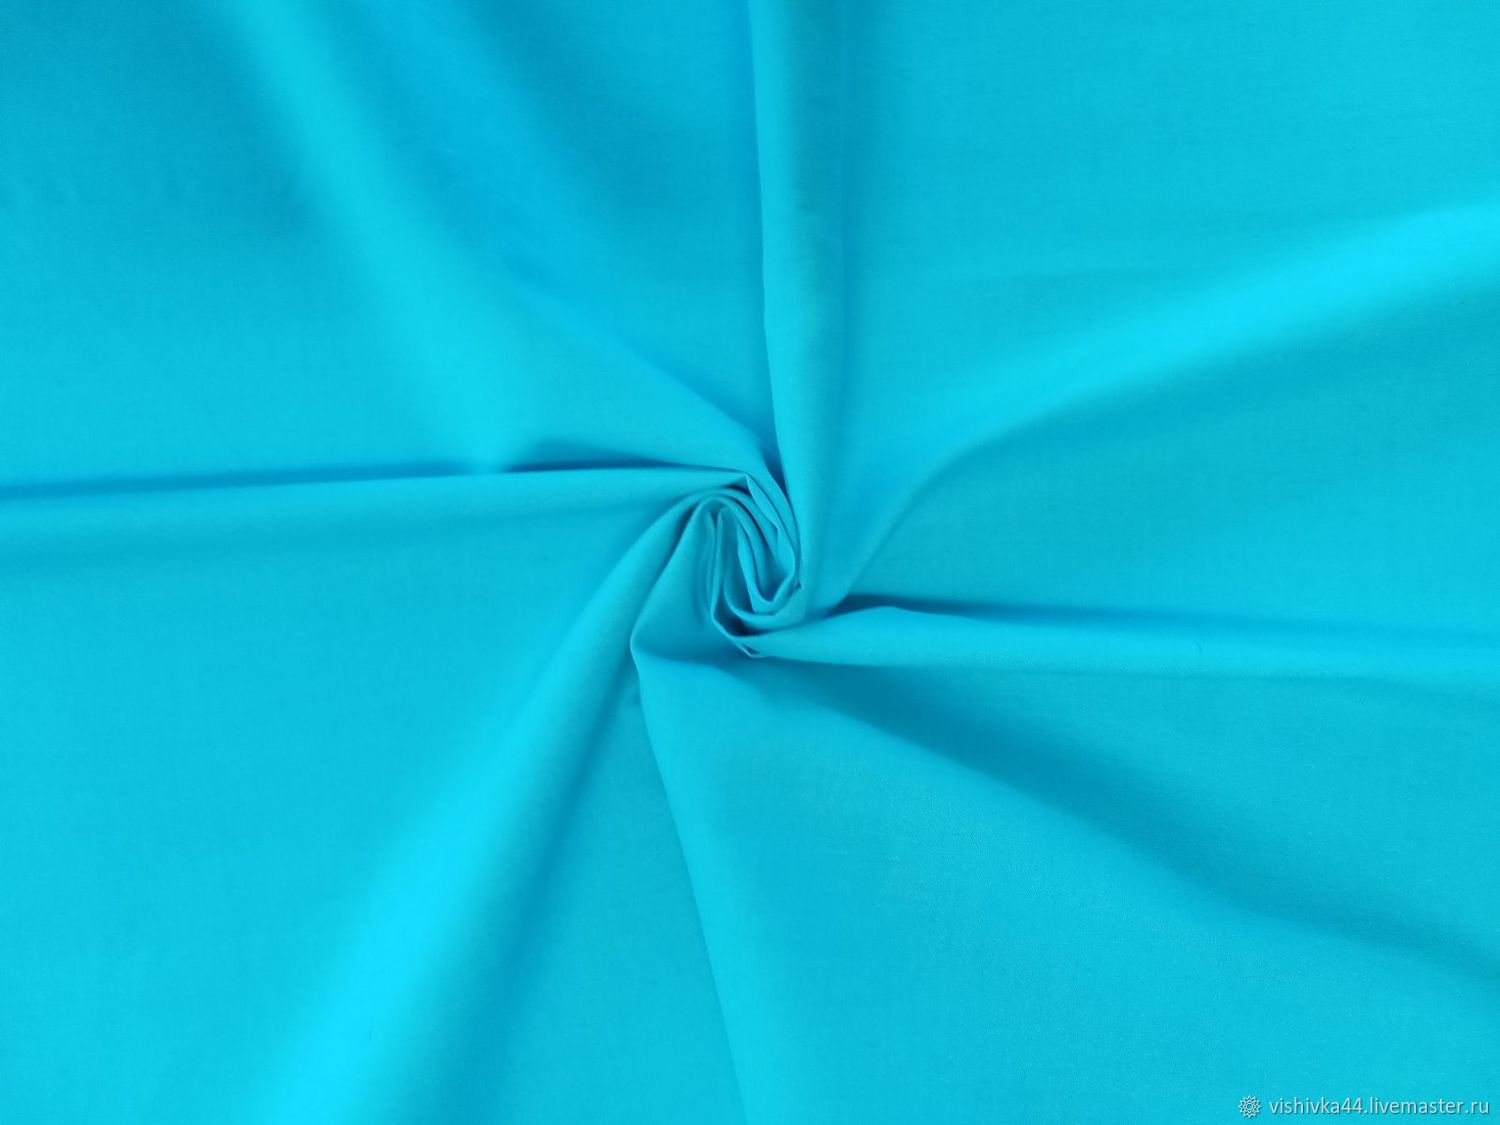 Ткань лен хлопок бирюзовый ( голубой яркий ) в интернет-магазине Ярмарка  Мастеров по цене 45 ₽ – MSBF8BY | Ткани, Кострома - доставка по России